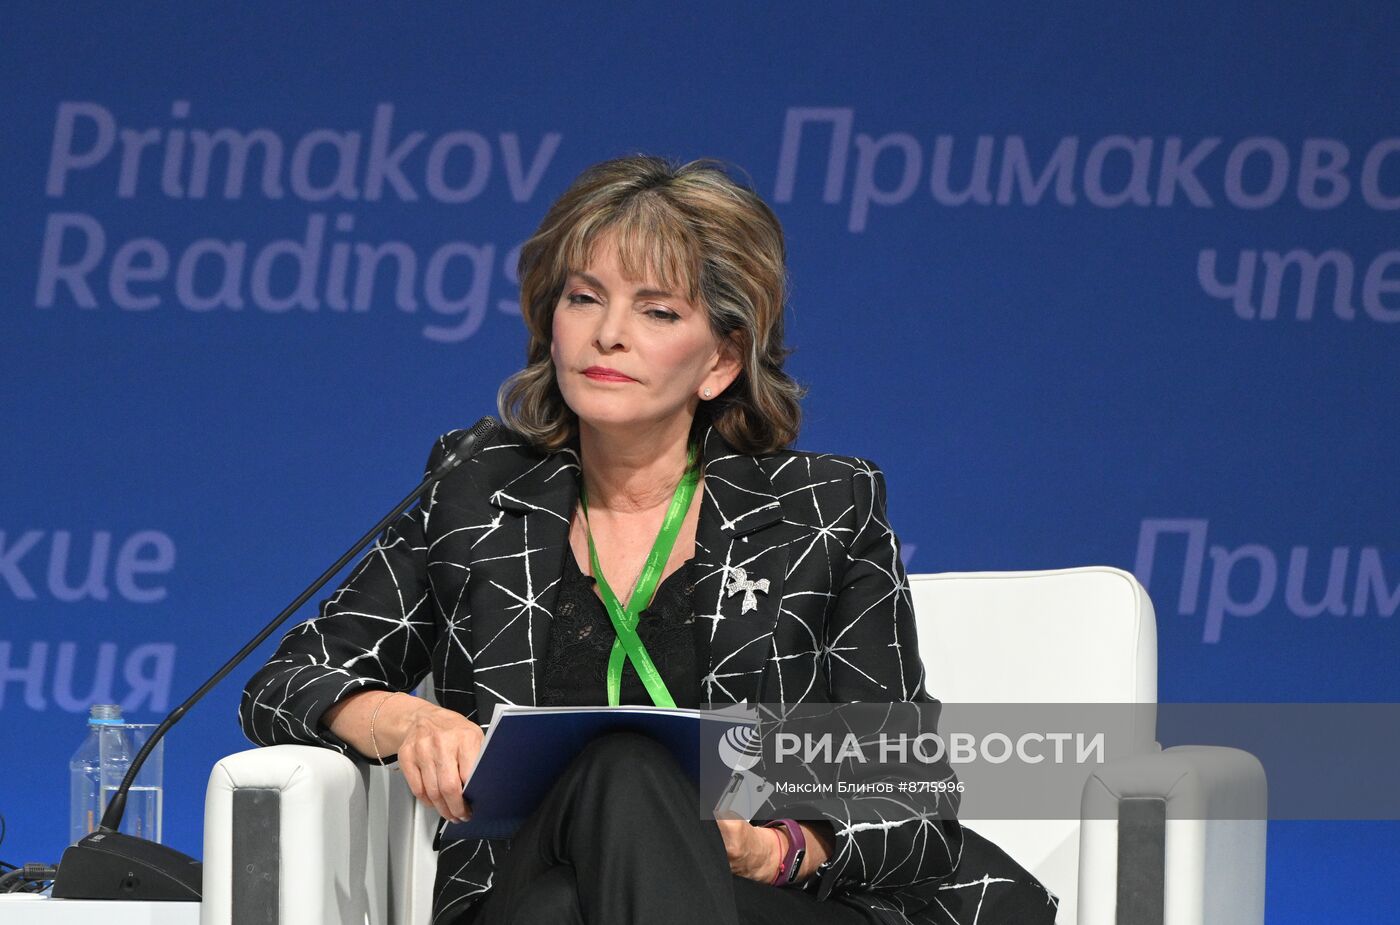 Международный форум "Примаковские чтения" 